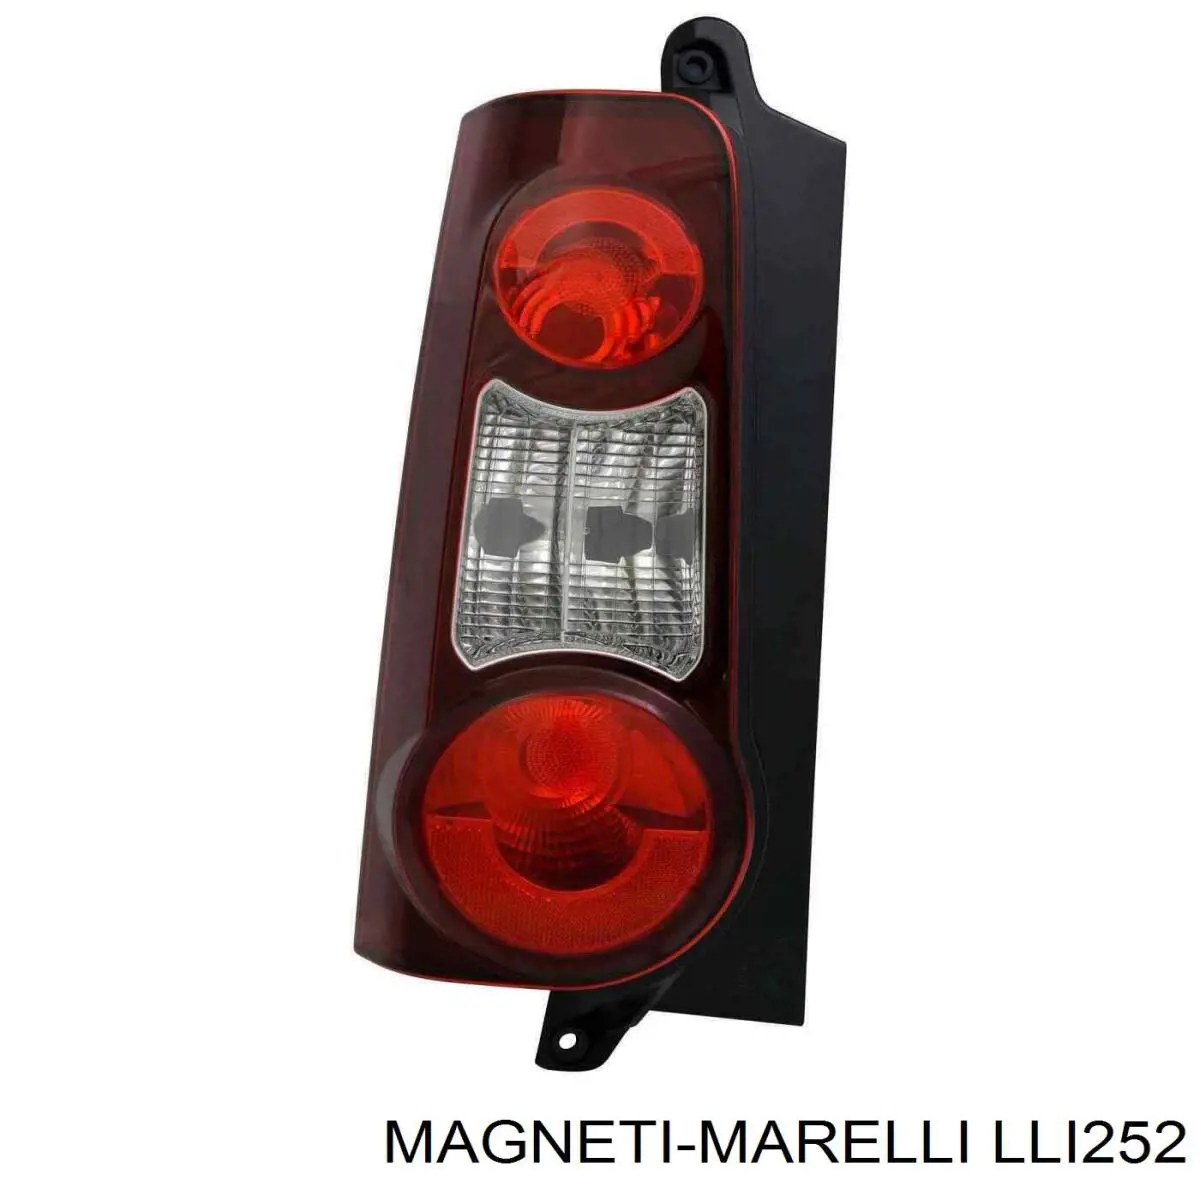 LLI252 Magneti Marelli piloto posterior izquierdo